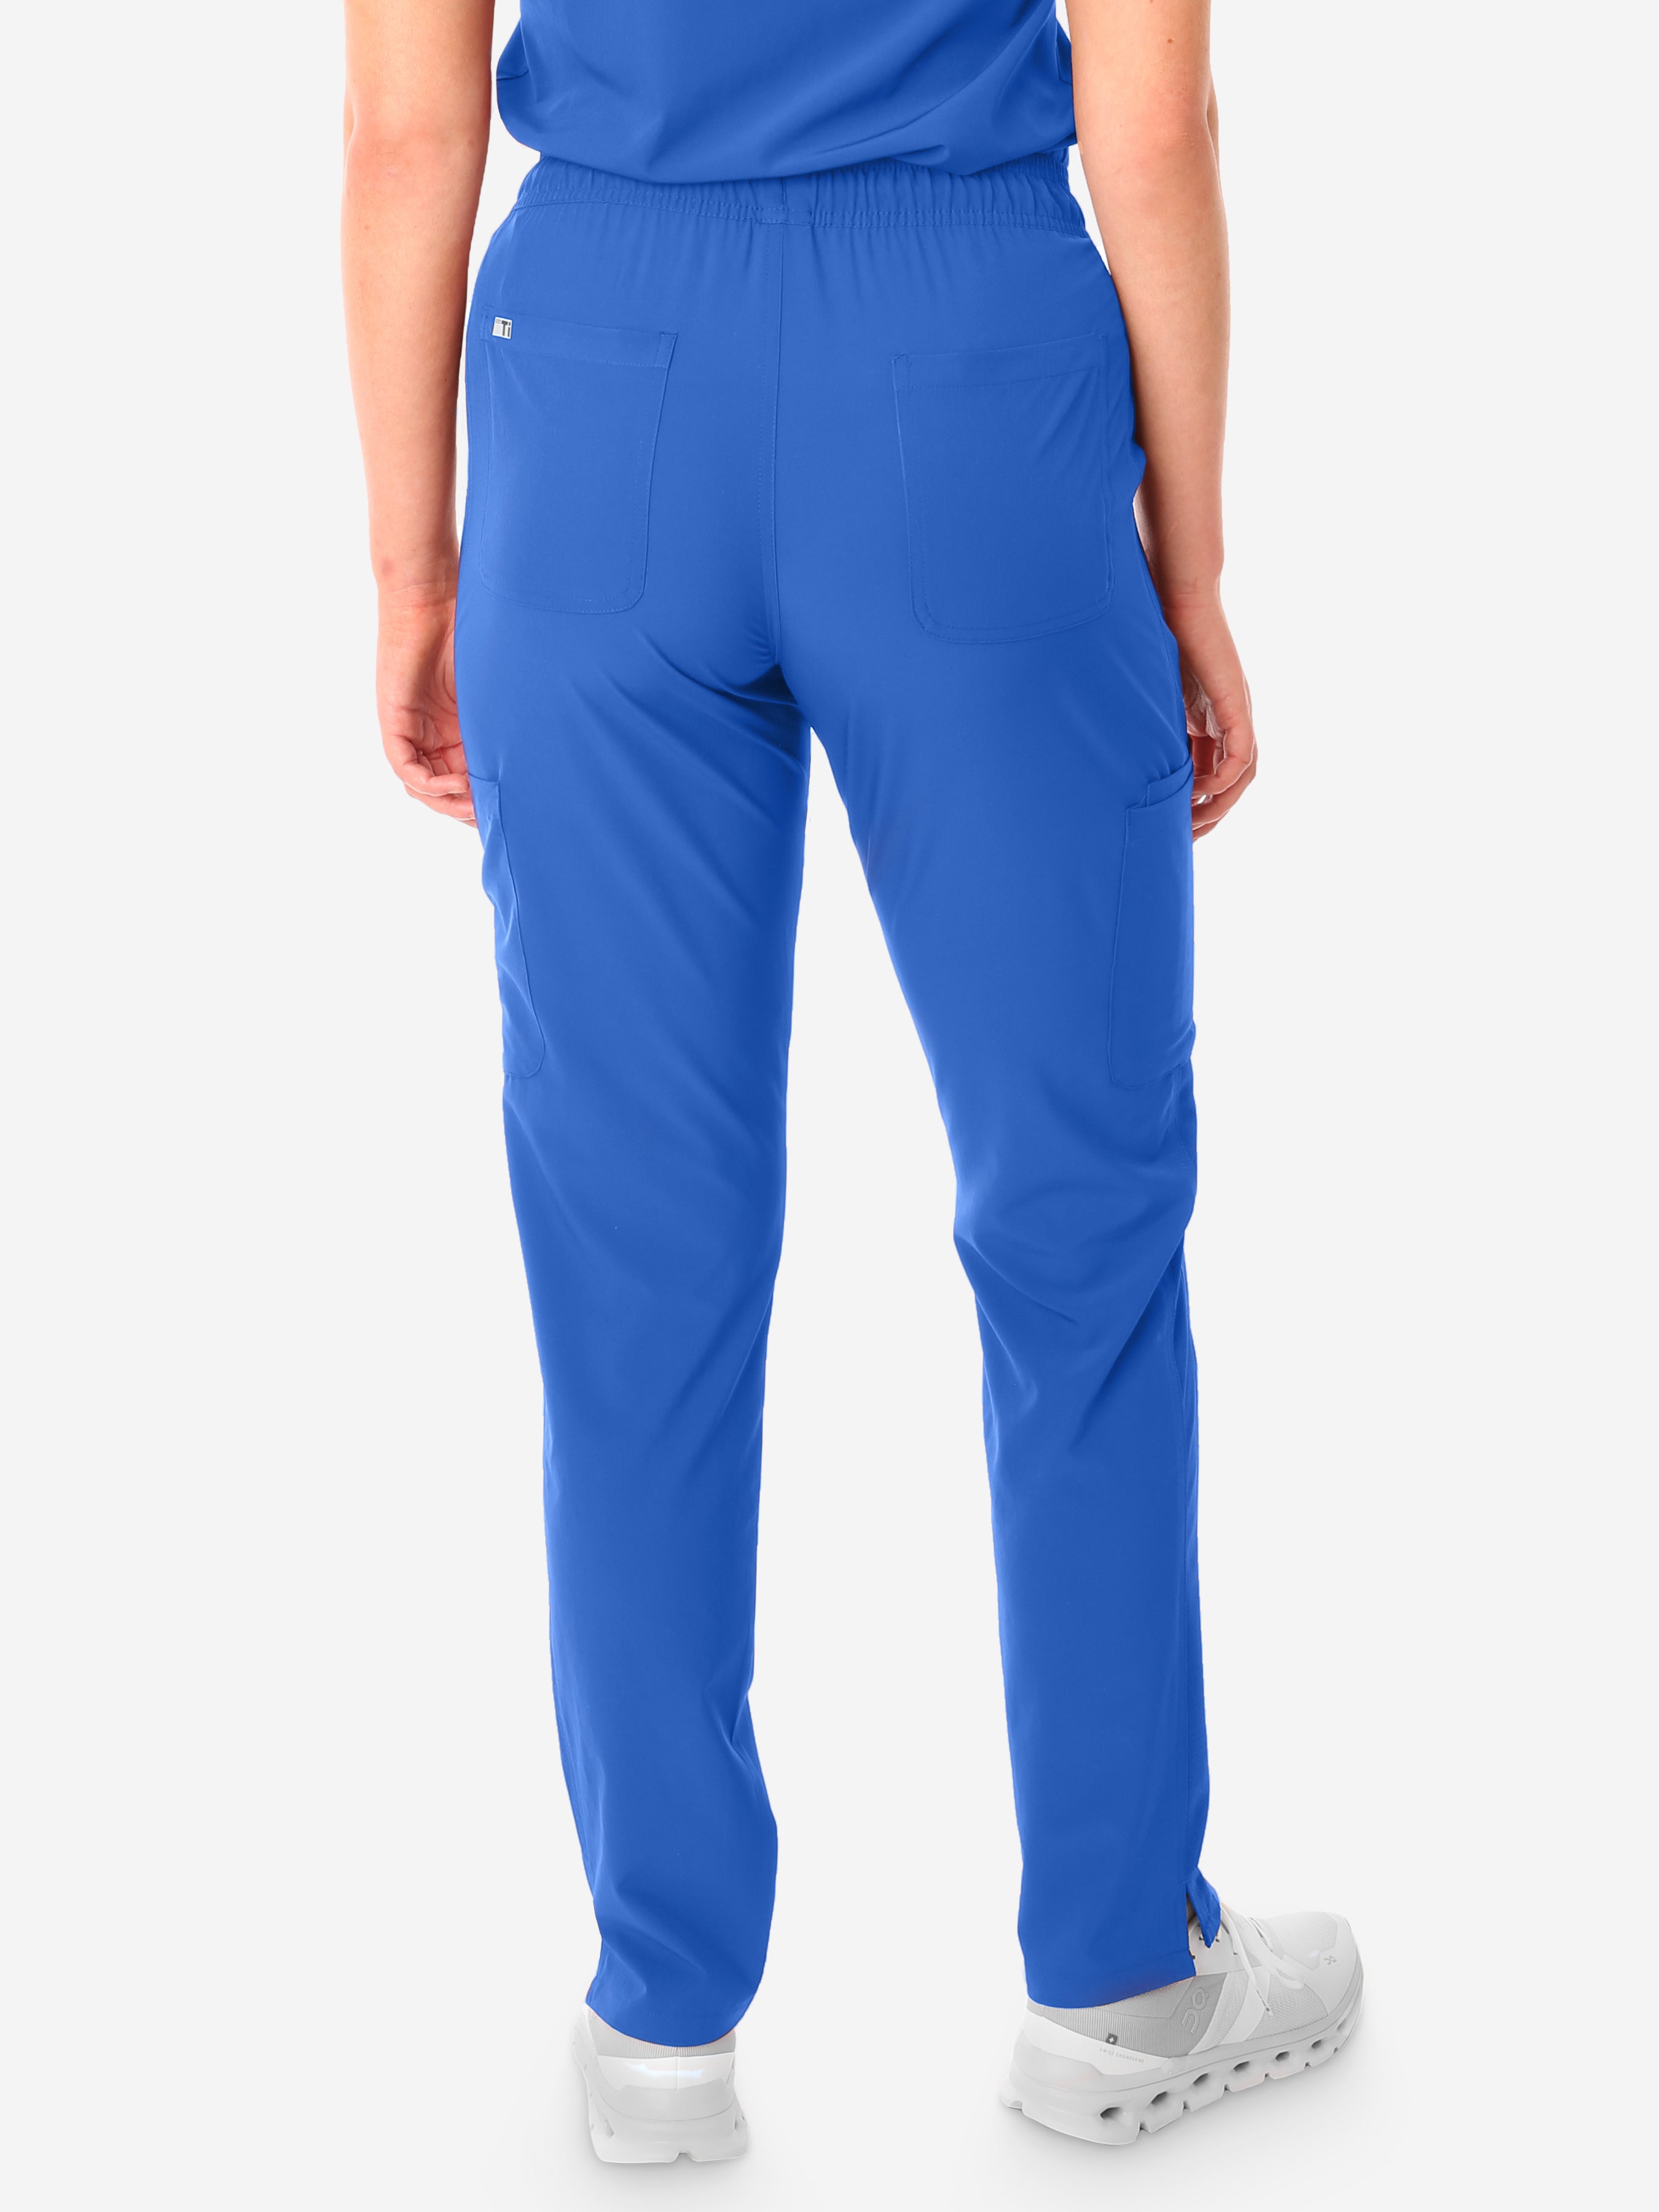 TiScrubs Royal Blue Women&#39;s Stretch 9-Pocket Pants Back View Pants Only